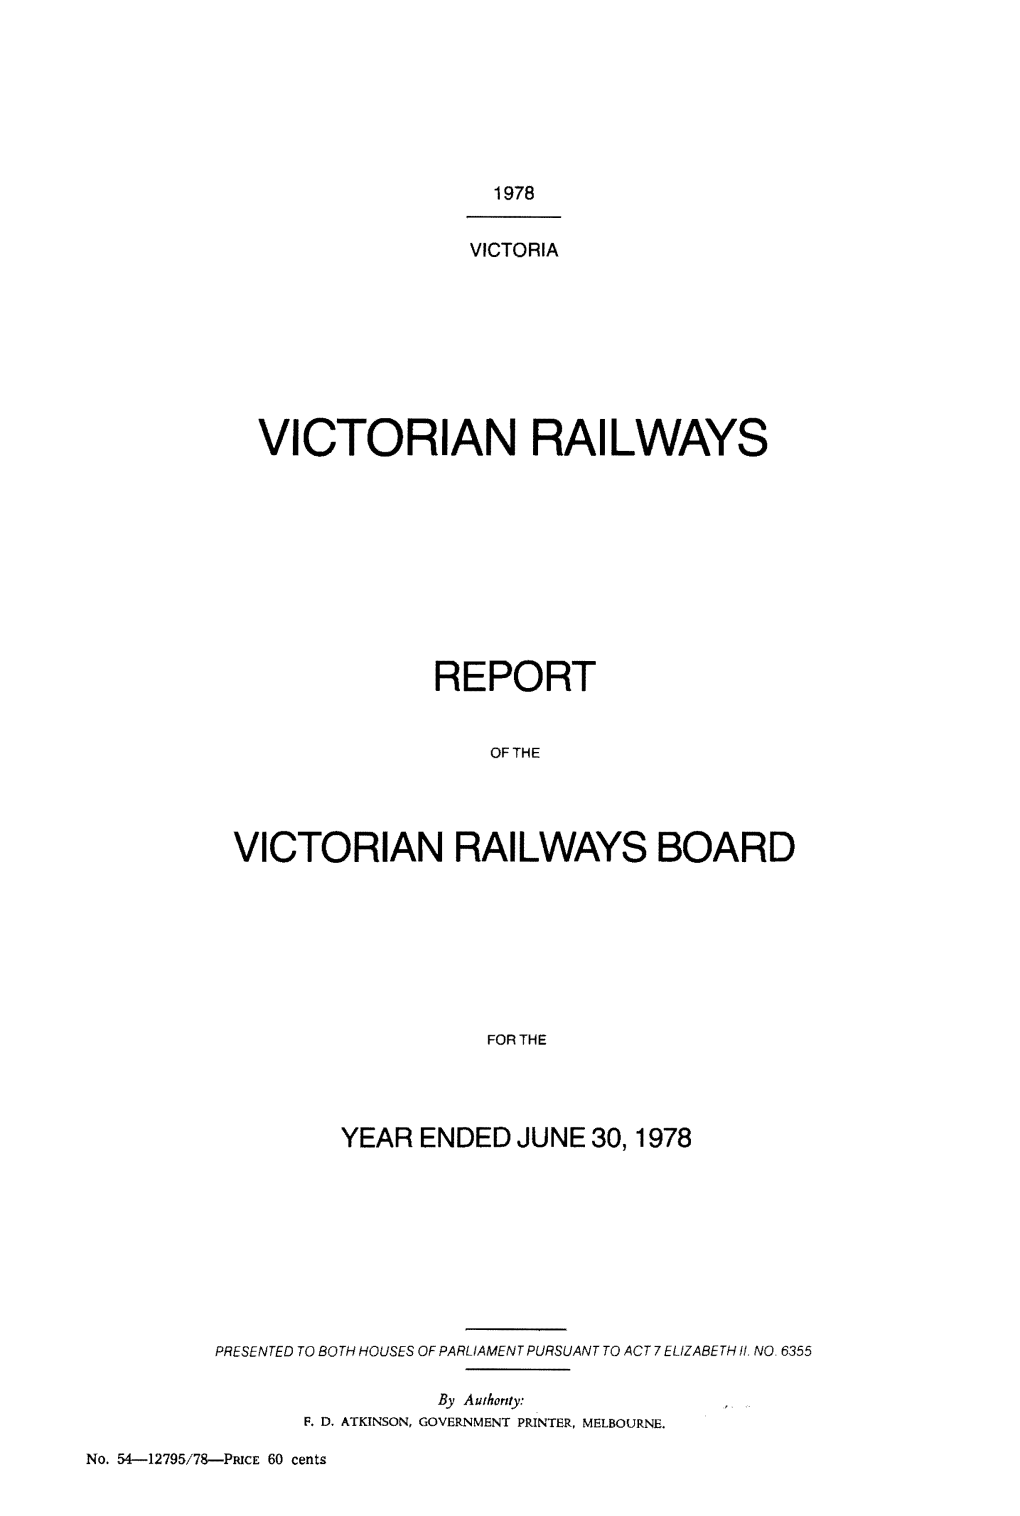 VR Annual Report 1978